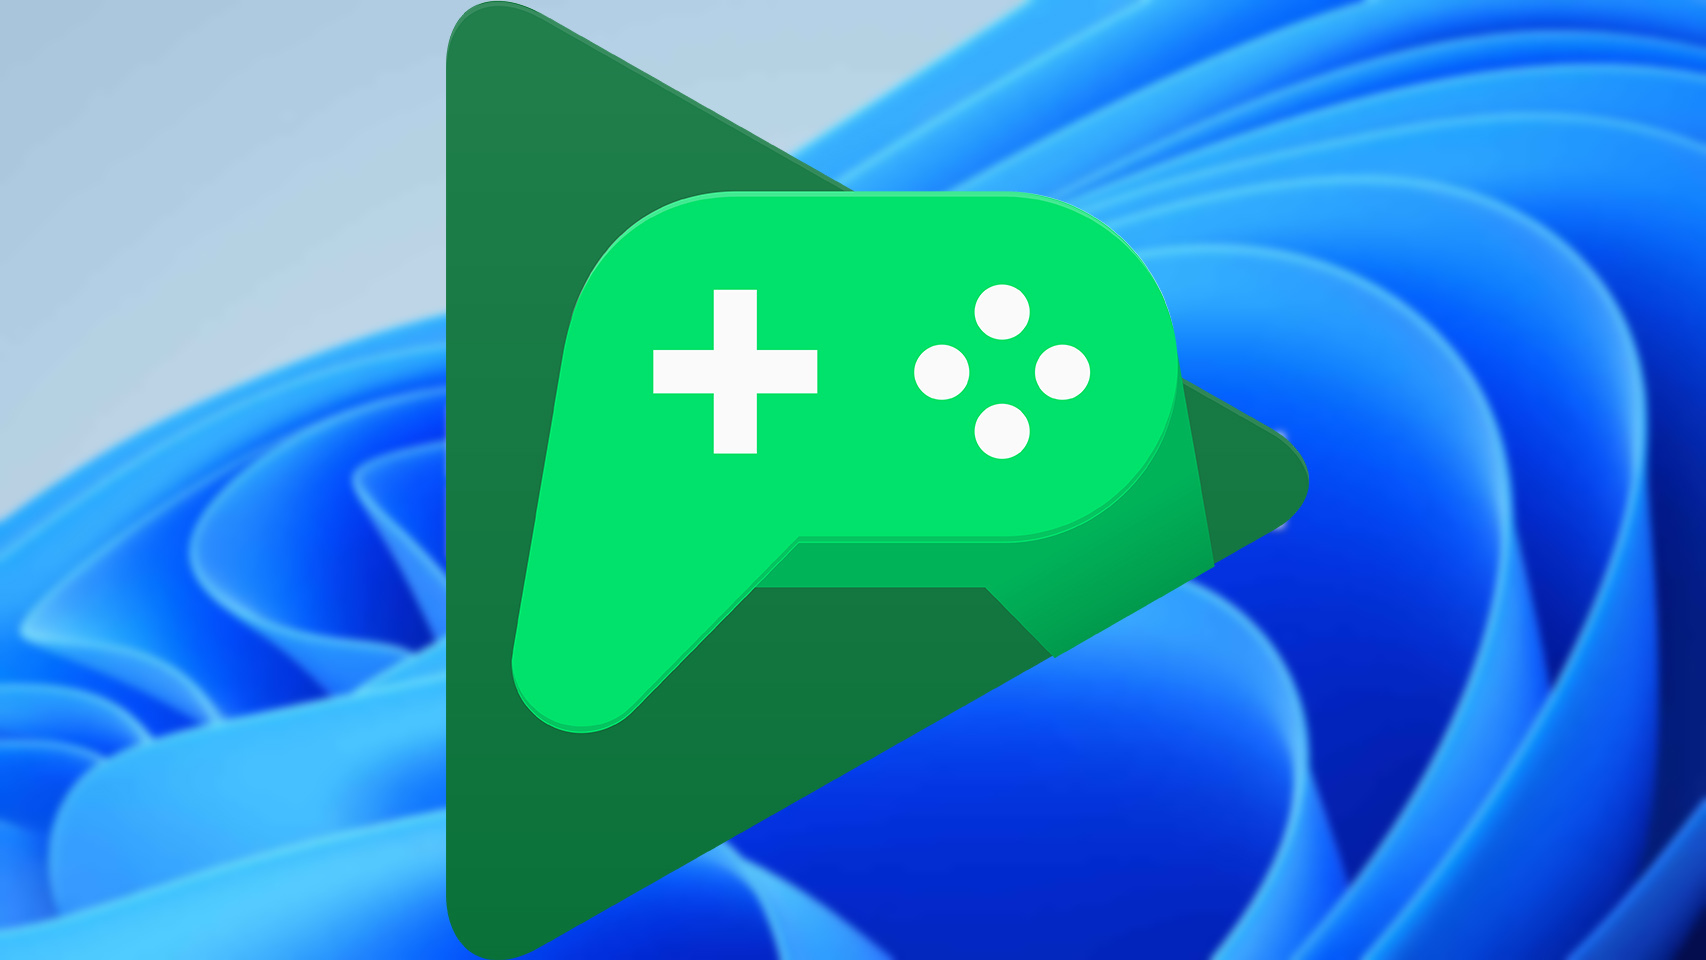 Los juegos de Google Play no requerirán una cuenta de Google Plus